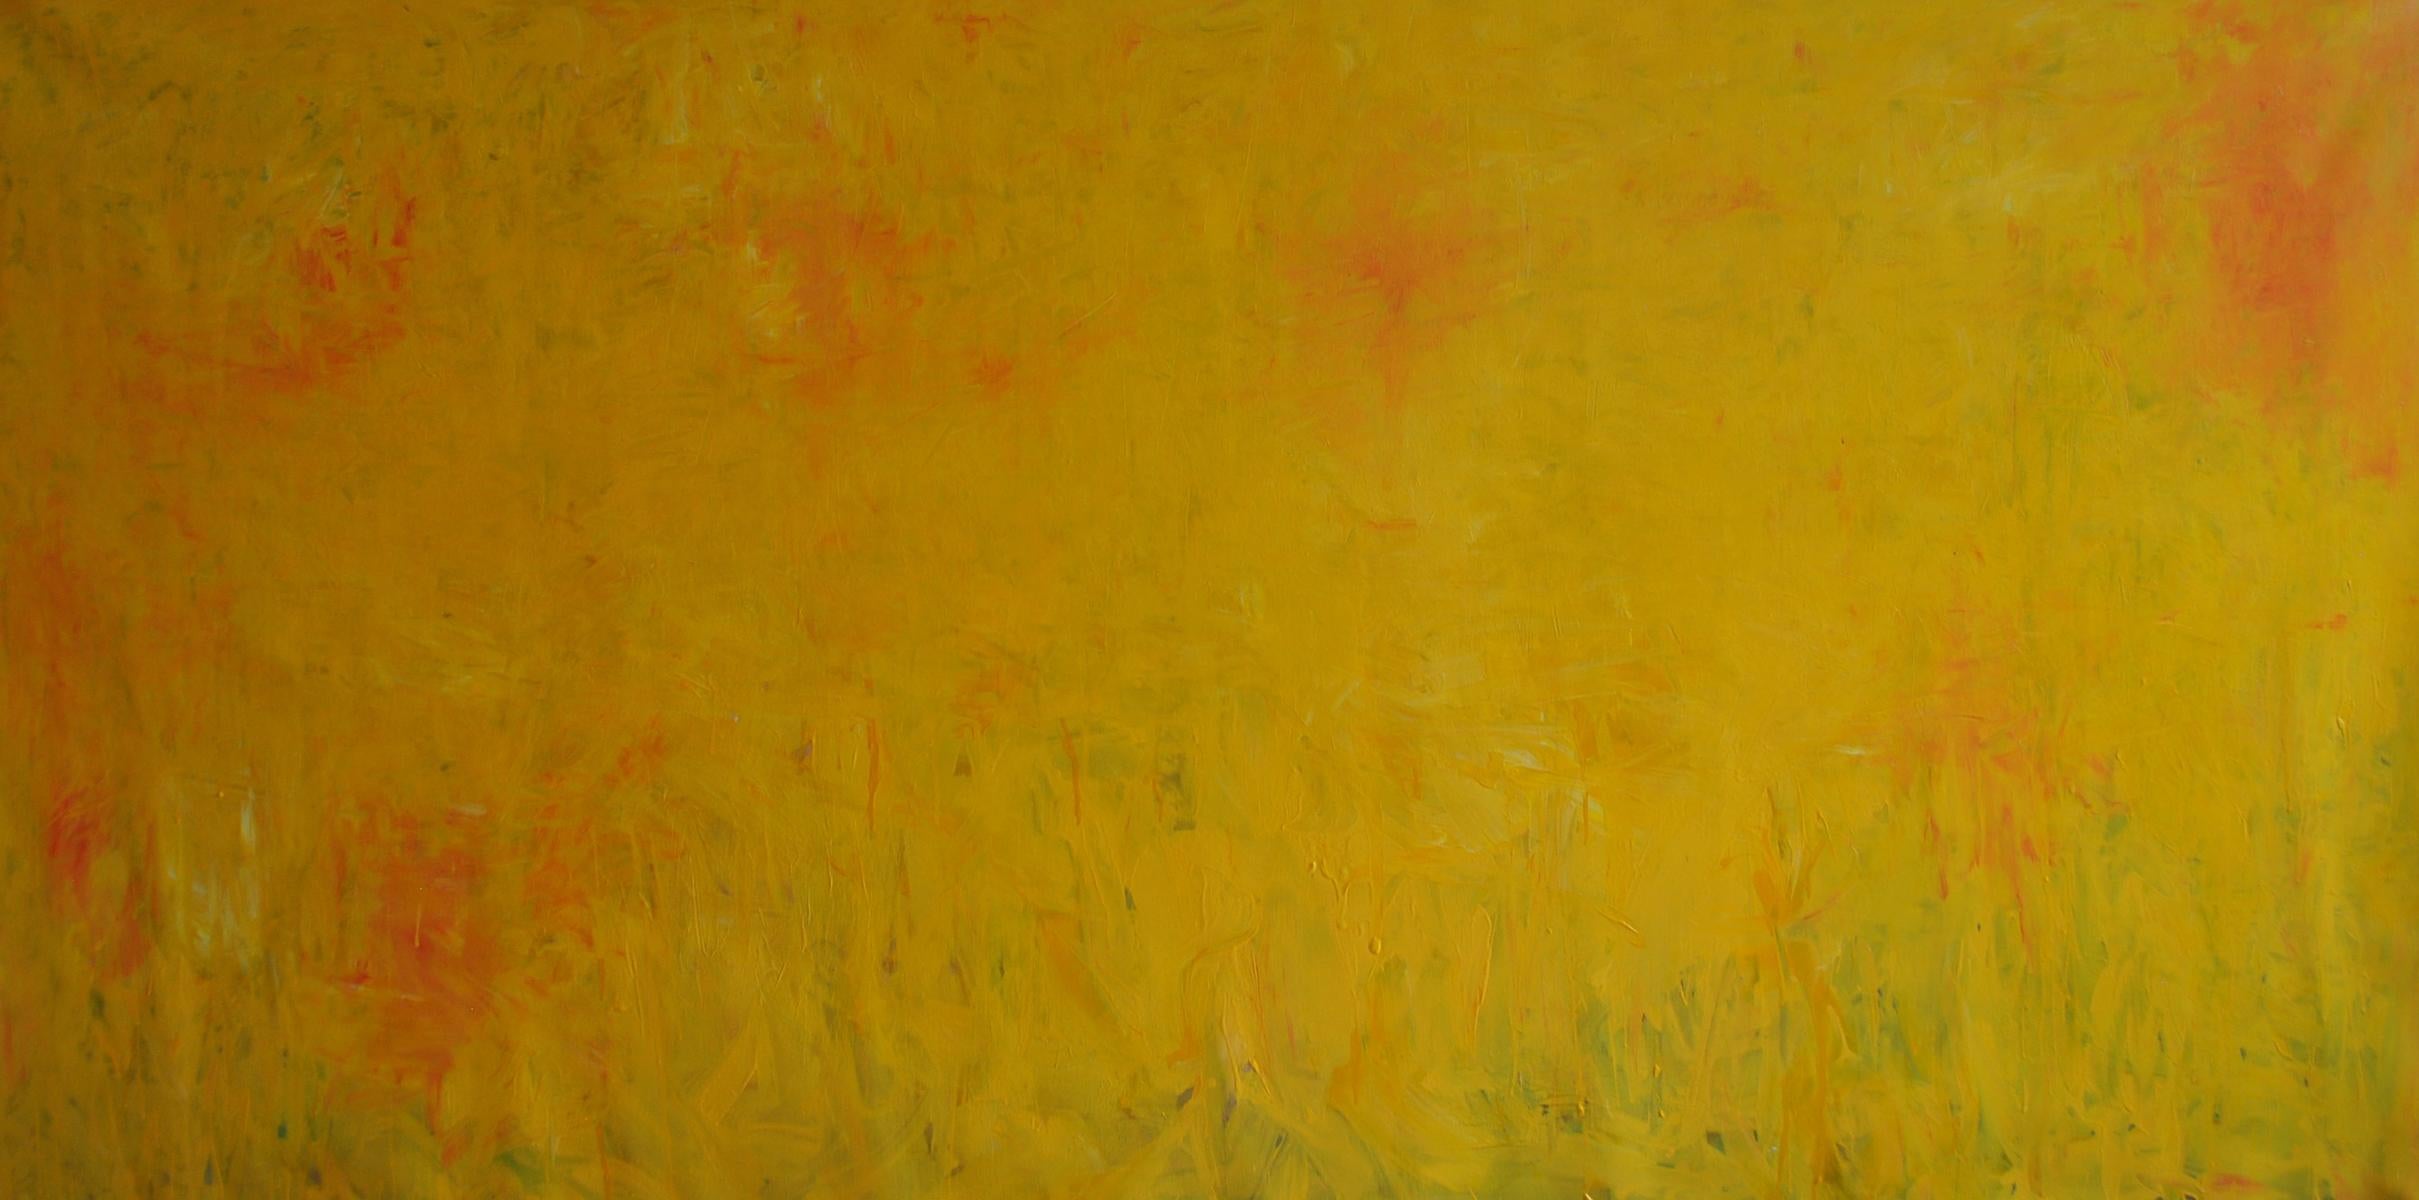 Collectional : L'espace silencieux
Acrylique sur toile

Le style de Md Tokon reflète l'art des expressionnistes abstraits américains. Md Tokon a passé ses premières années à Jhenidah et à Dhaka. La physicalité et l'immédiateté de ses peintures